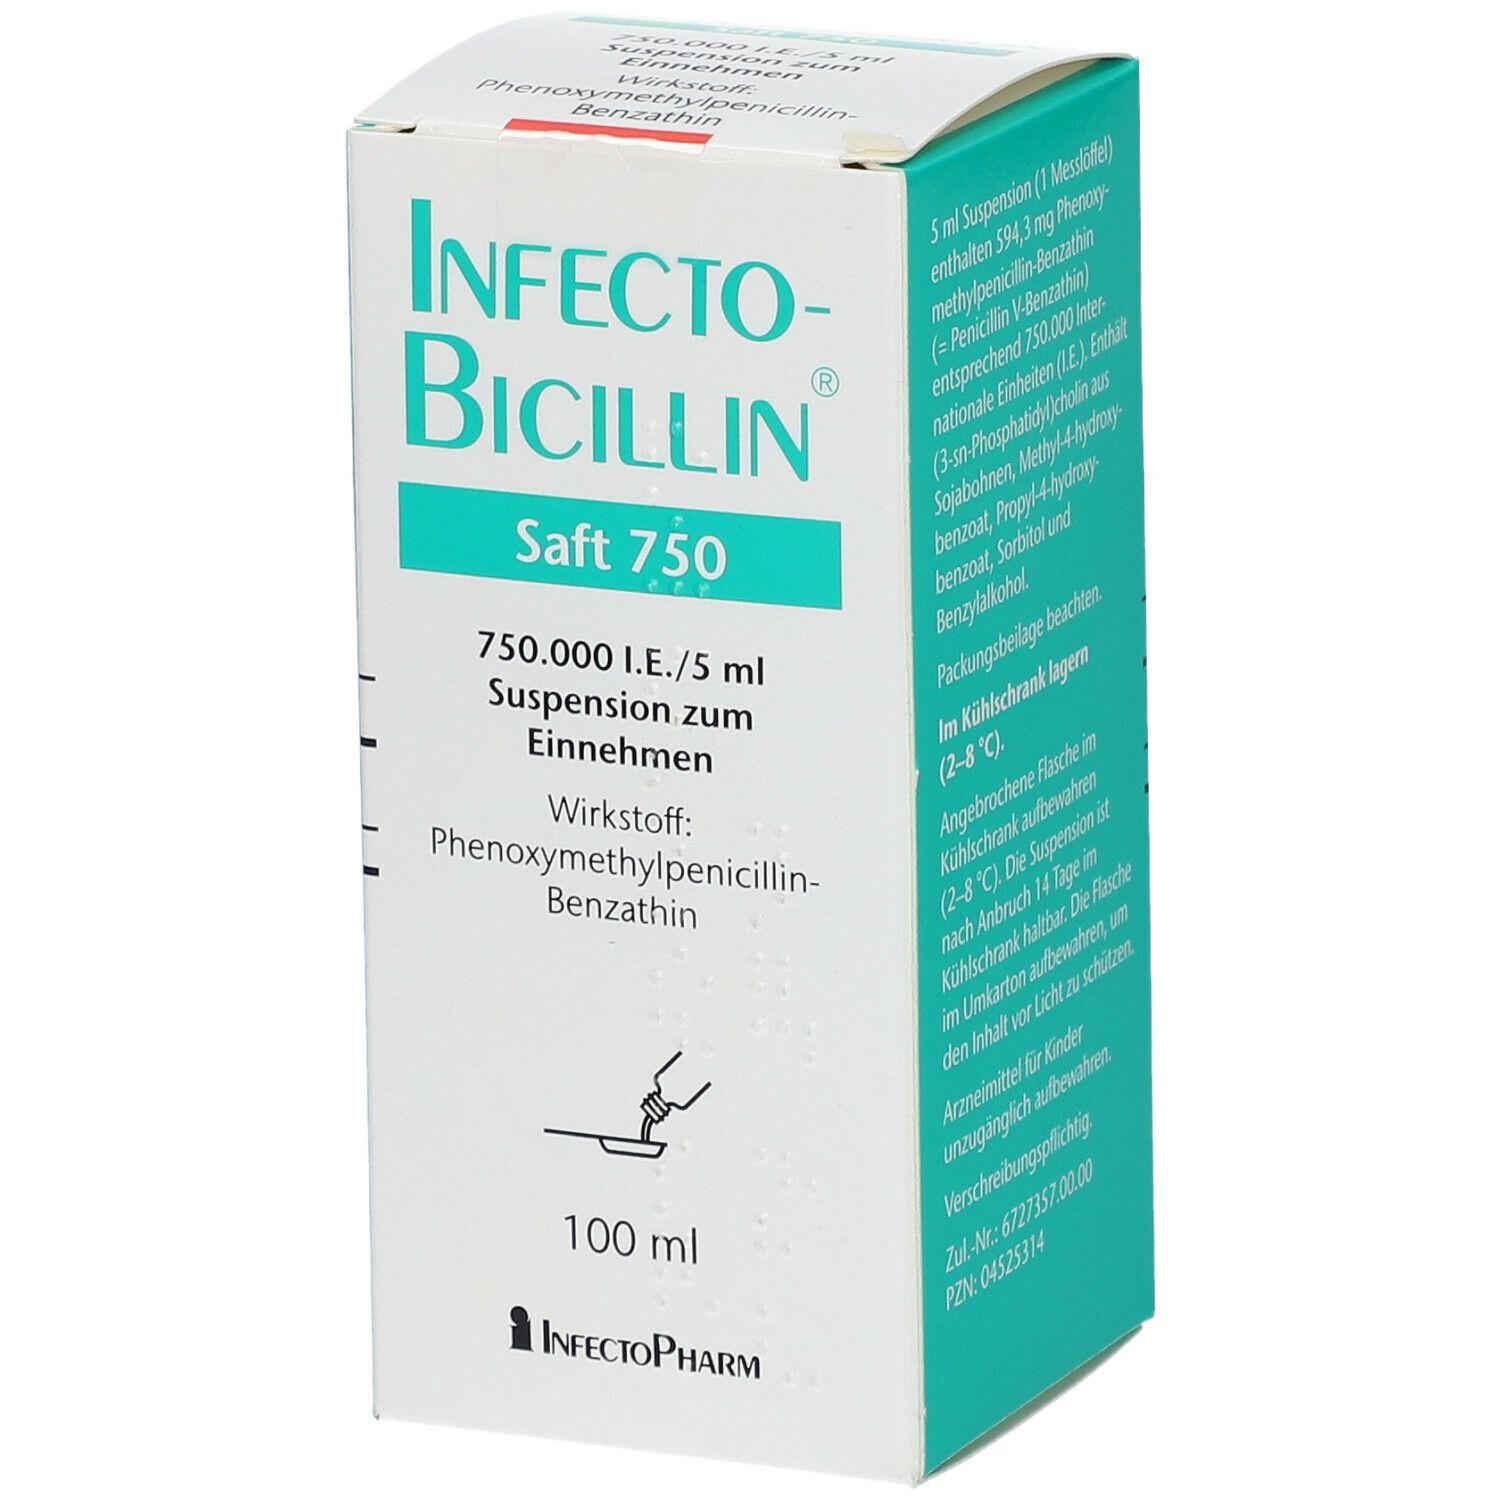 InfectoBicillin® Saft 750